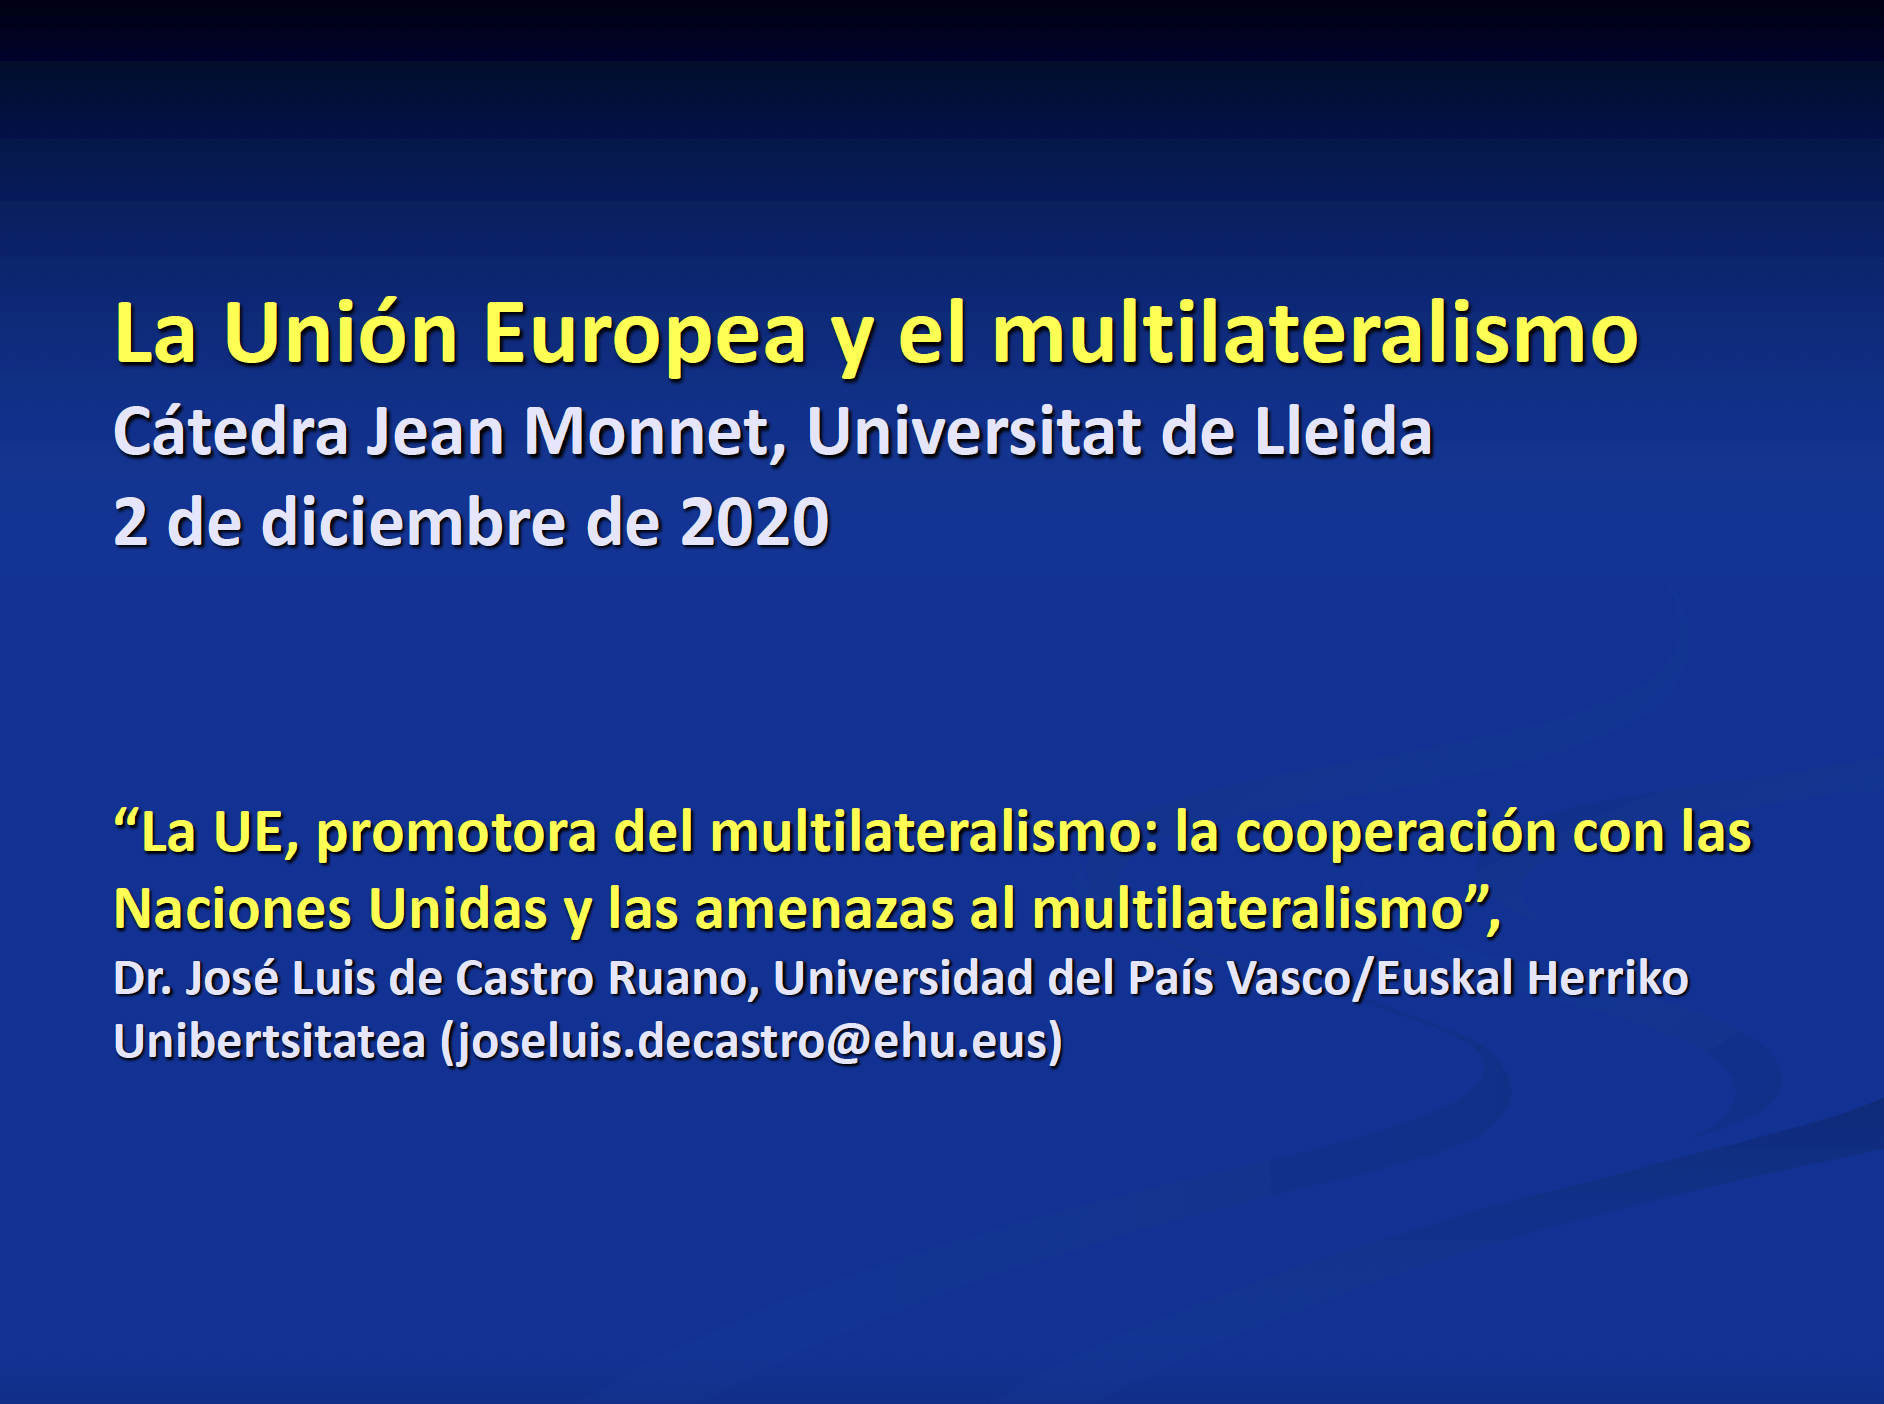 La UE, promotora del multilateralismo: la cooperación con las Naciones Unidas y las amenazas al multilateralismo